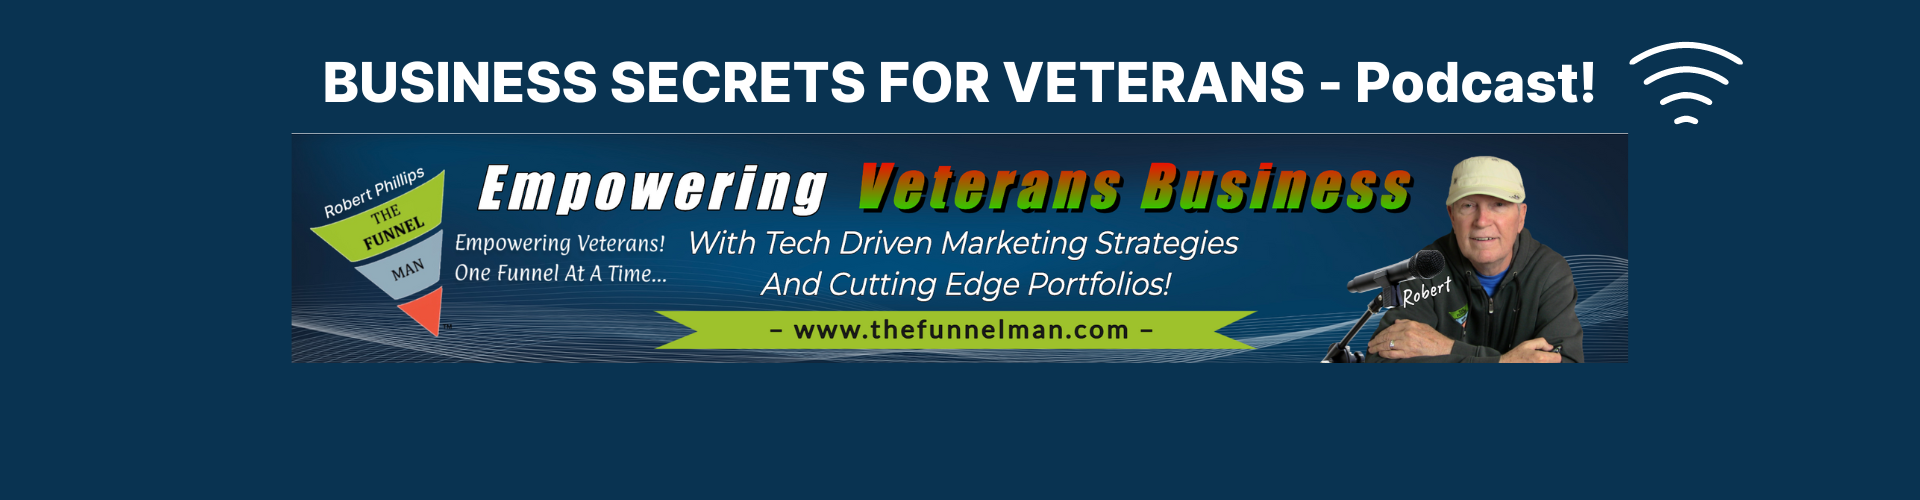 Business Secrets for Veterans